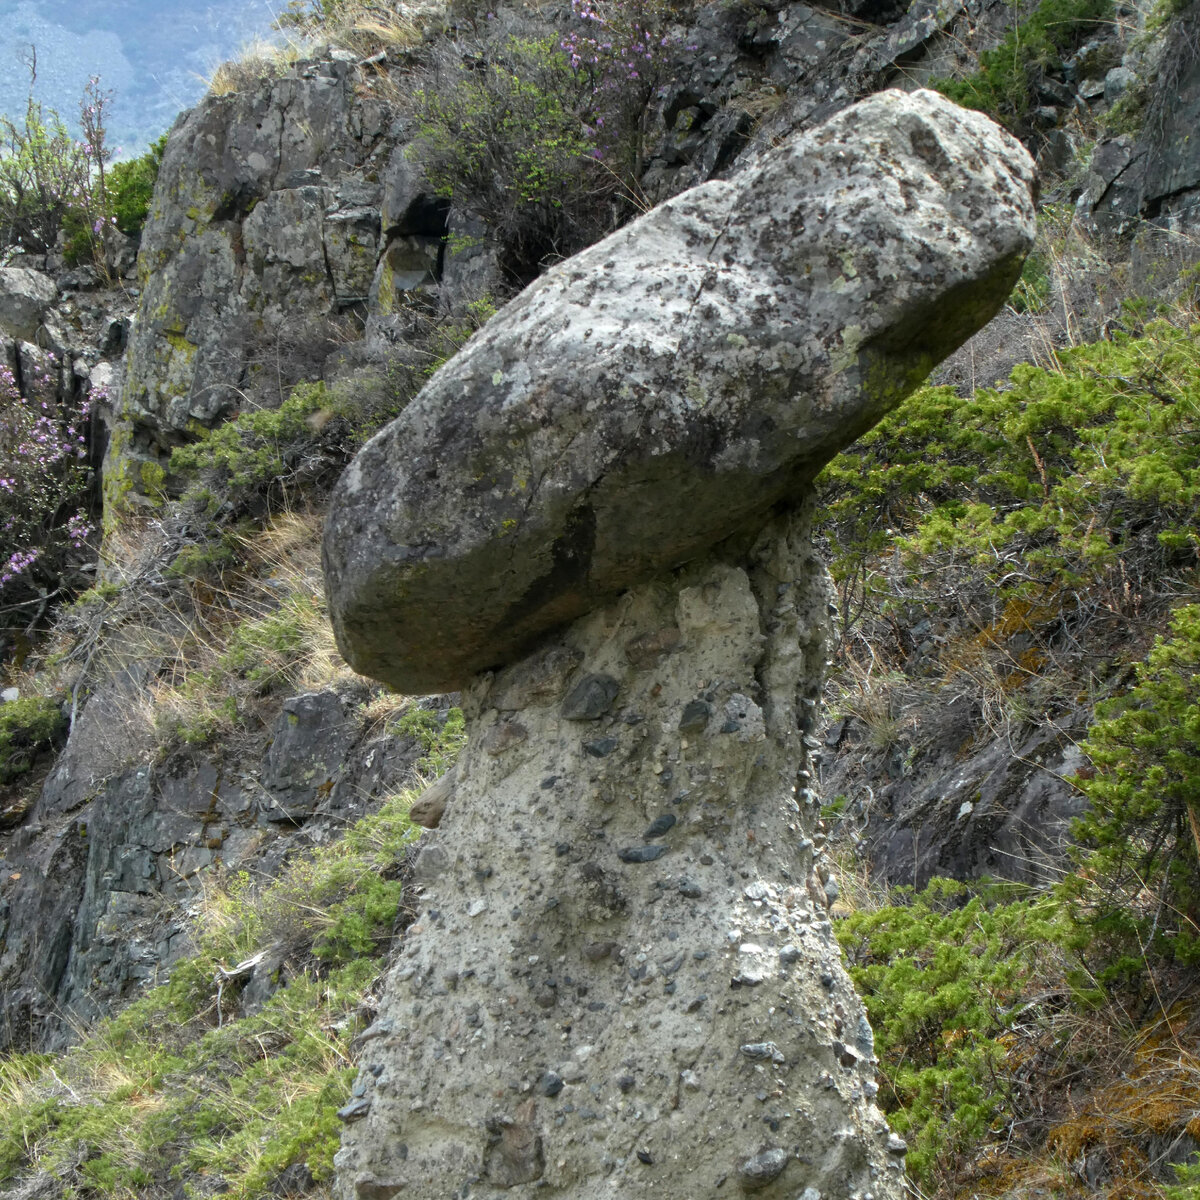 Урочище Аккурум с Каменными грибами - одно из чудес России, сотворённое самой природой, всего в 34 км от перевала Кату-Ярык.-5-5